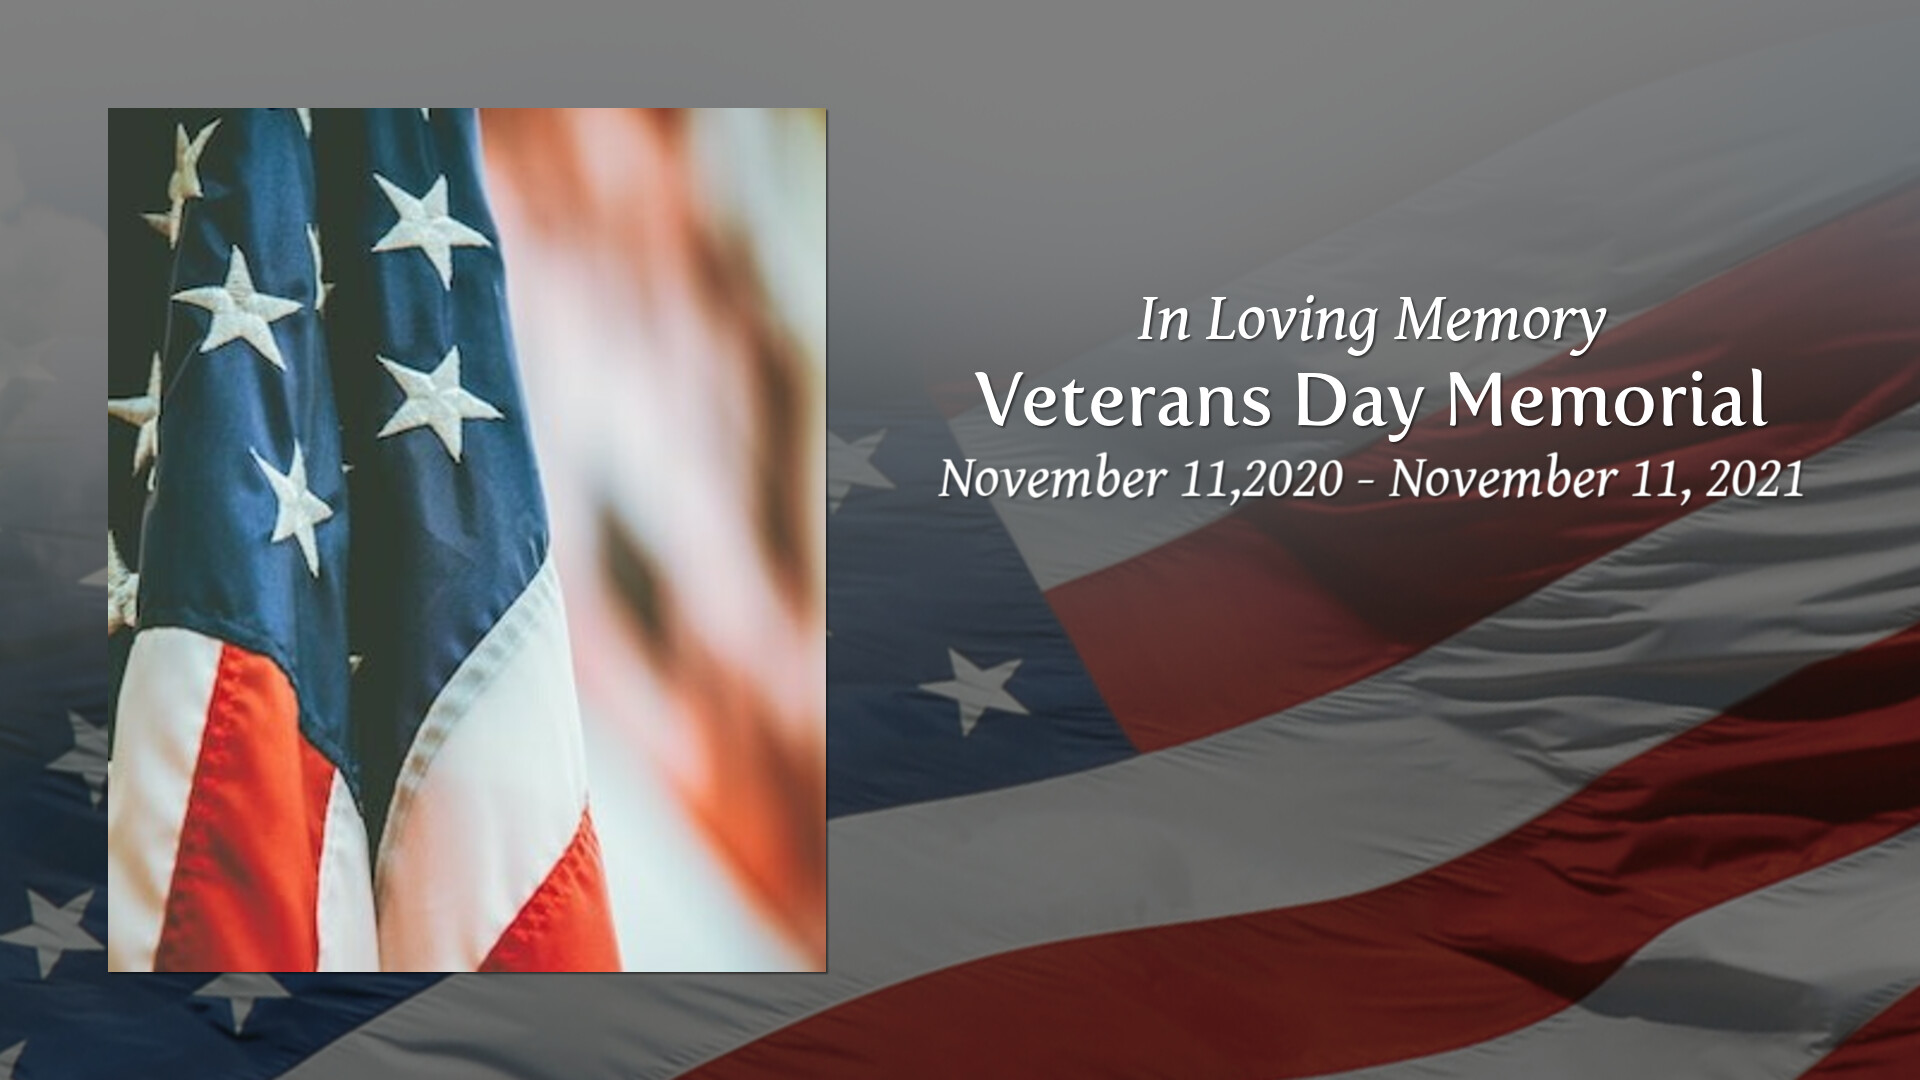 Veterans Day Memorial Tribute Video